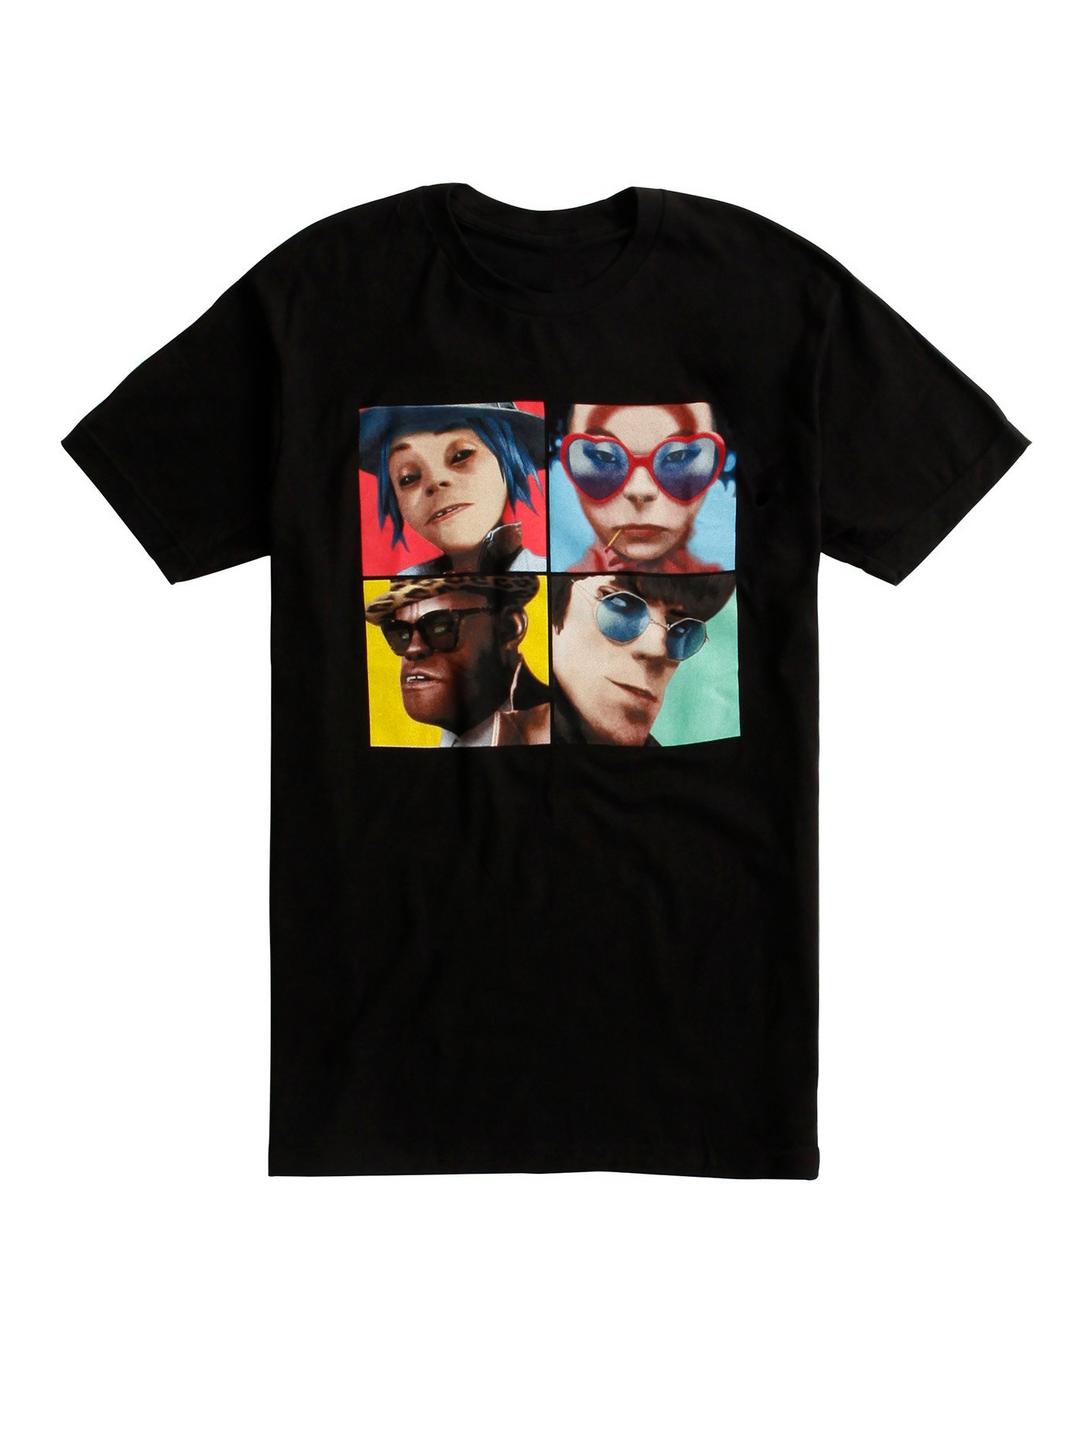 Gorillaz Humanz Album T-Shirt, BLACK, hi-res